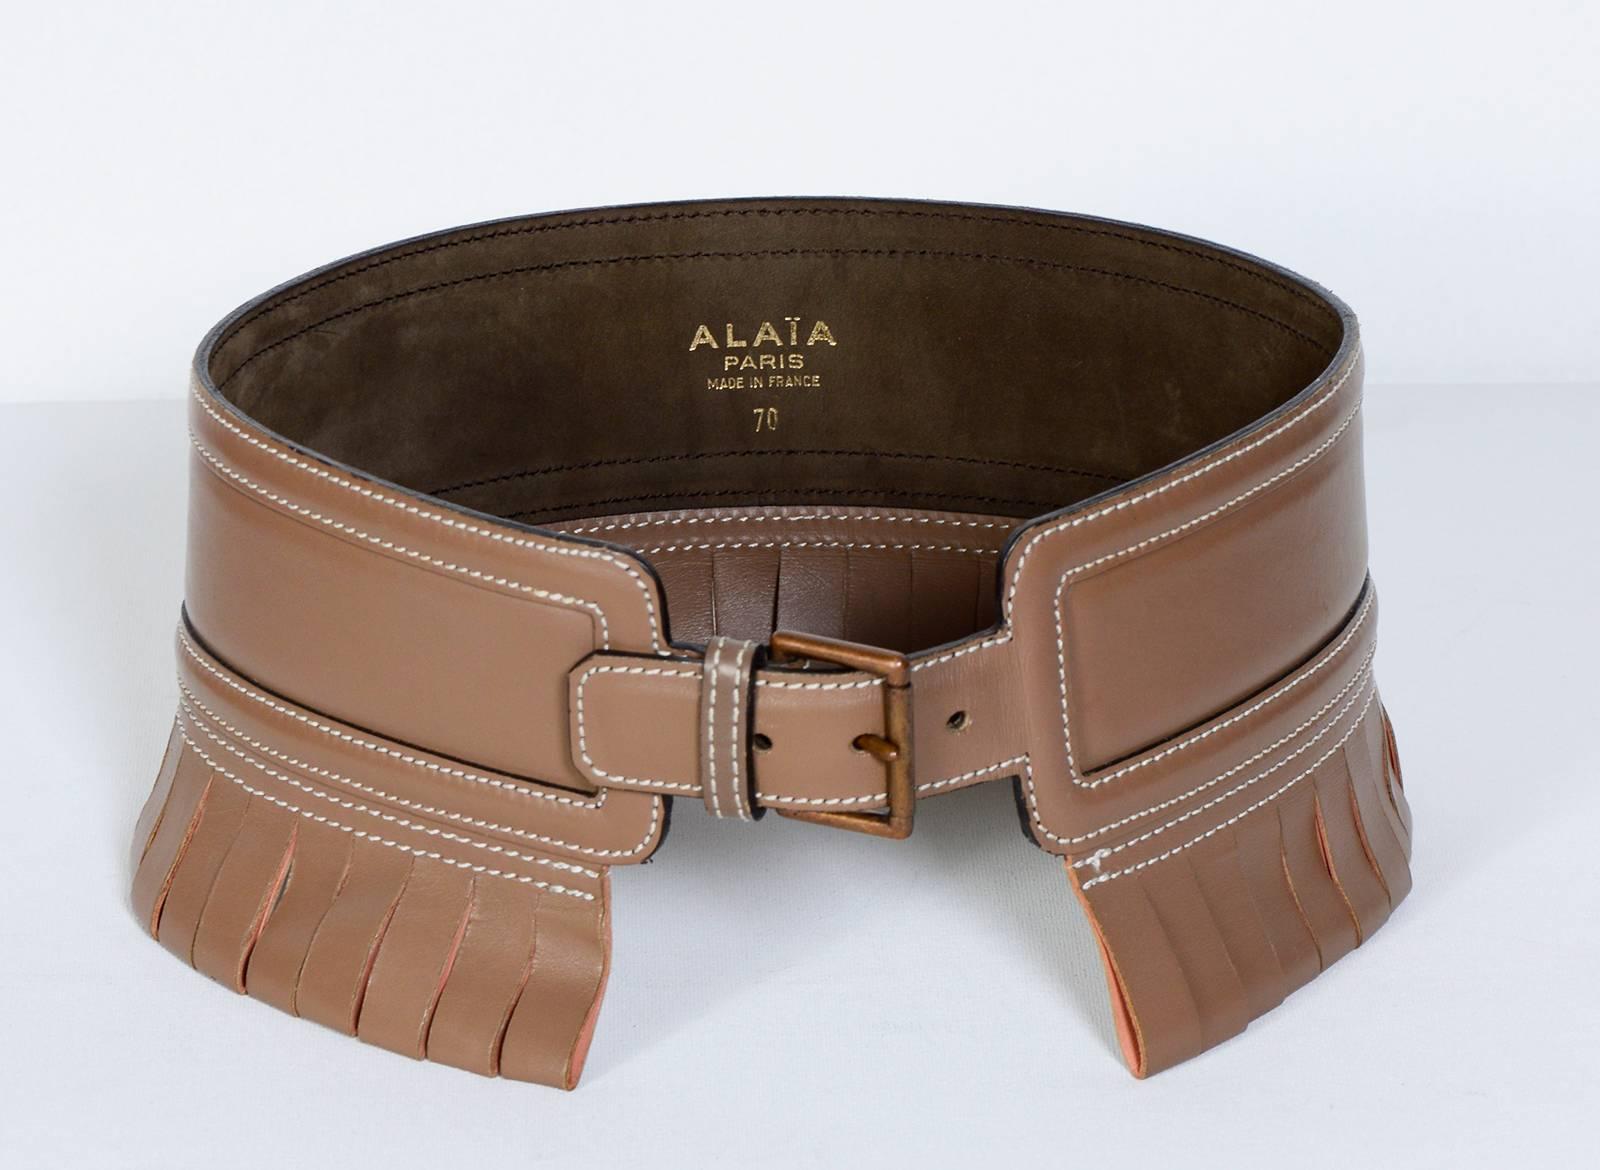 Alaia 80's leather belt
Measurements Waist : 70cm - 27'5inch